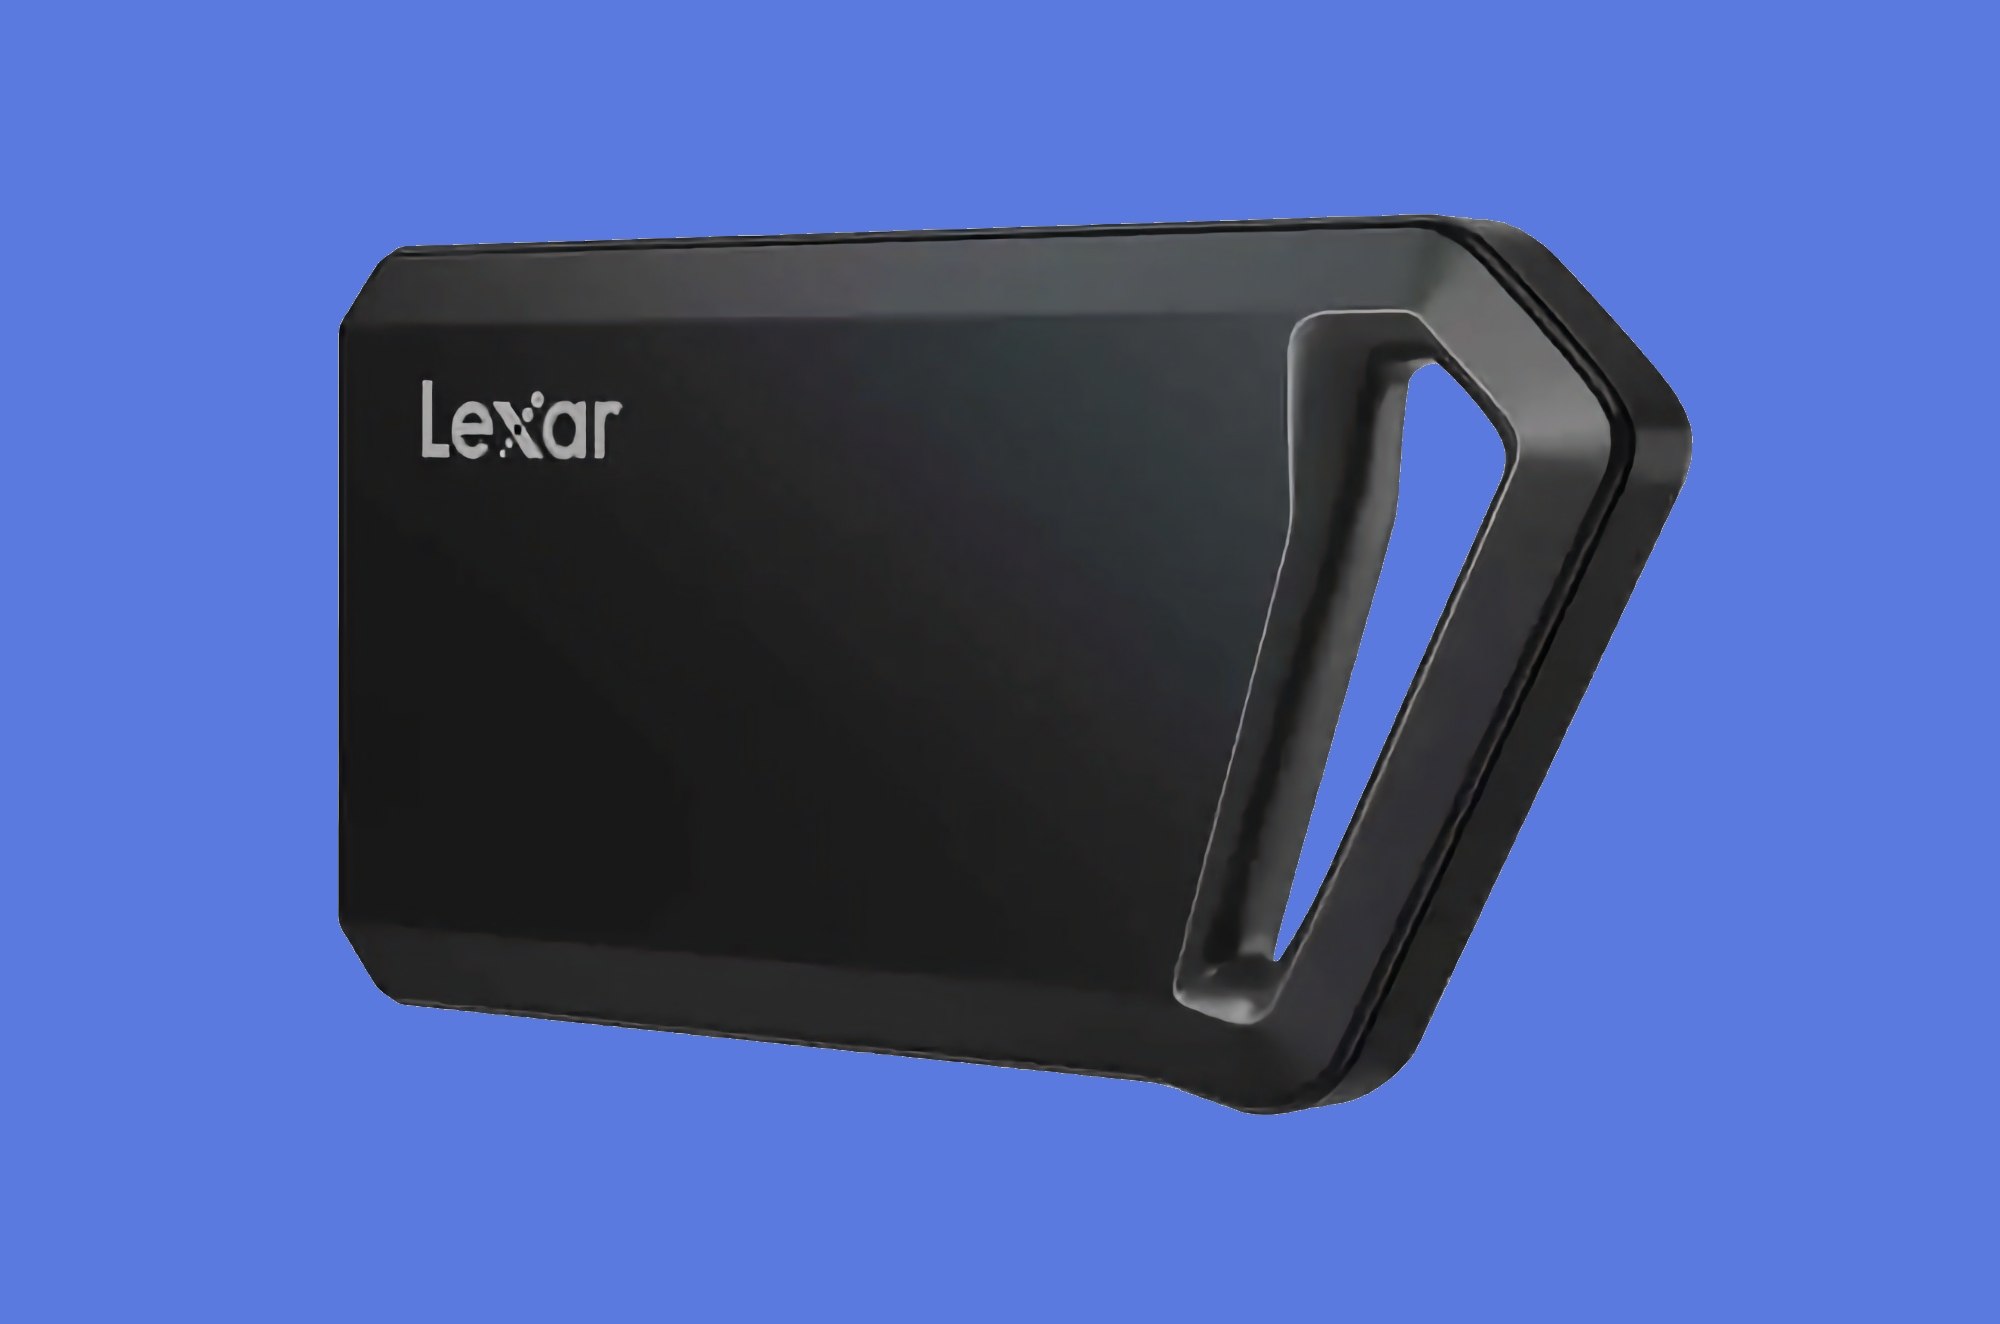 Lexar zaprezentował przenośny dysk SSD Professional SL600 z odporną na wstrząsy obudową, pojemnością 1-4 TB i cenami zaczynającymi się od 89 USD.